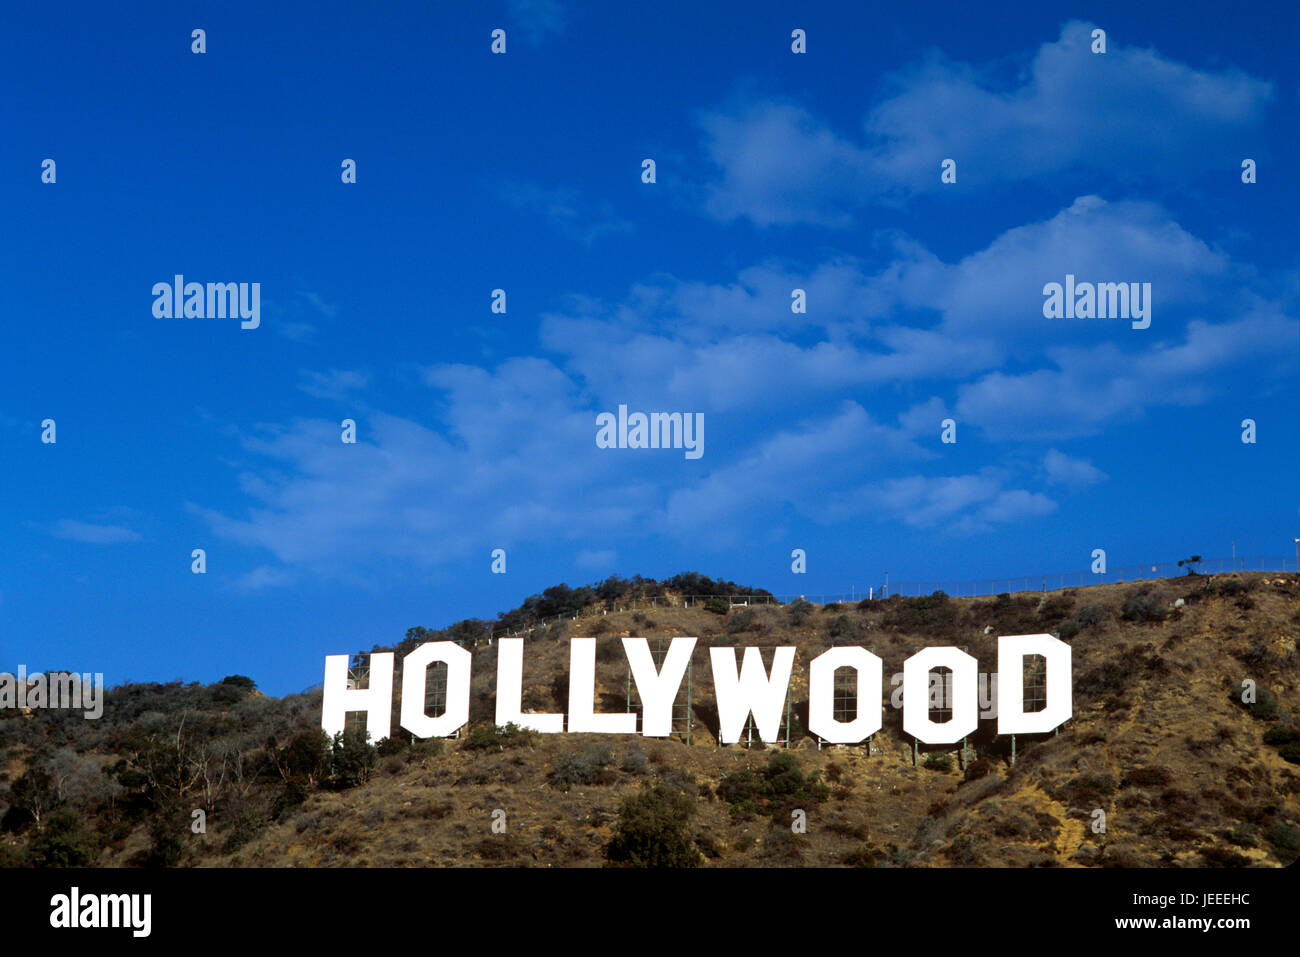 Le célèbre panneau Hollywood dans les collines au-dessus de Los Angeles, CA. Banque D'Images